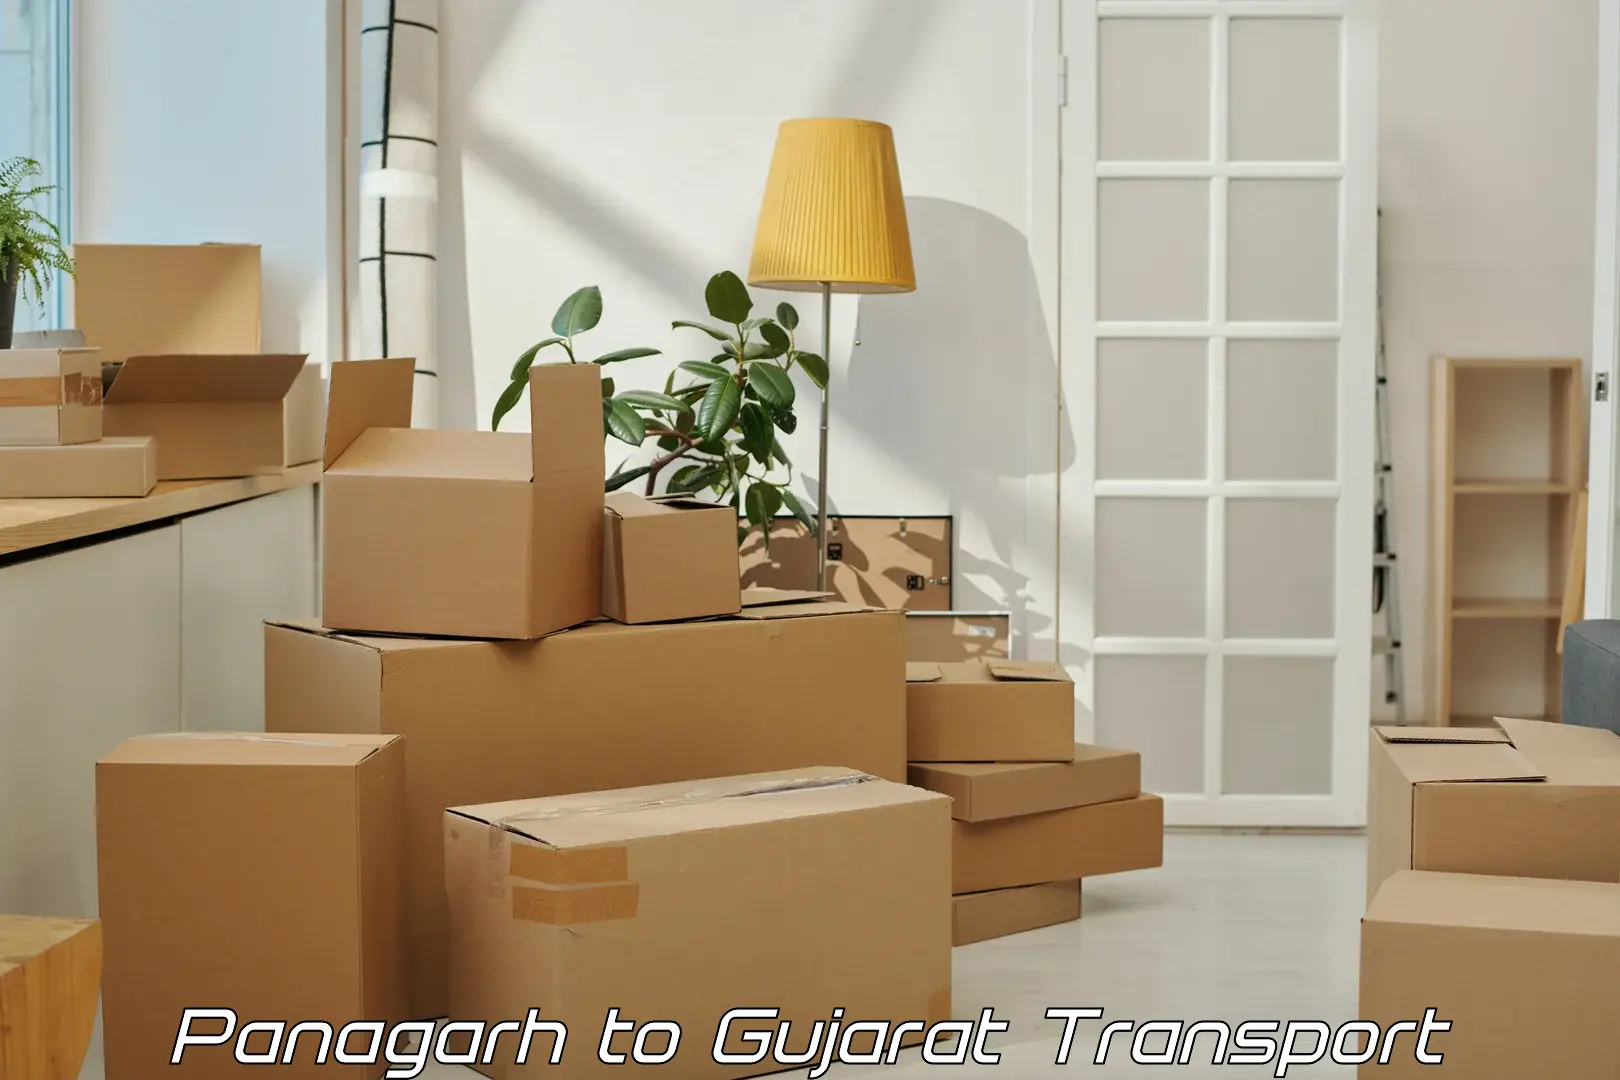 Furniture transport service Panagarh to Sihor